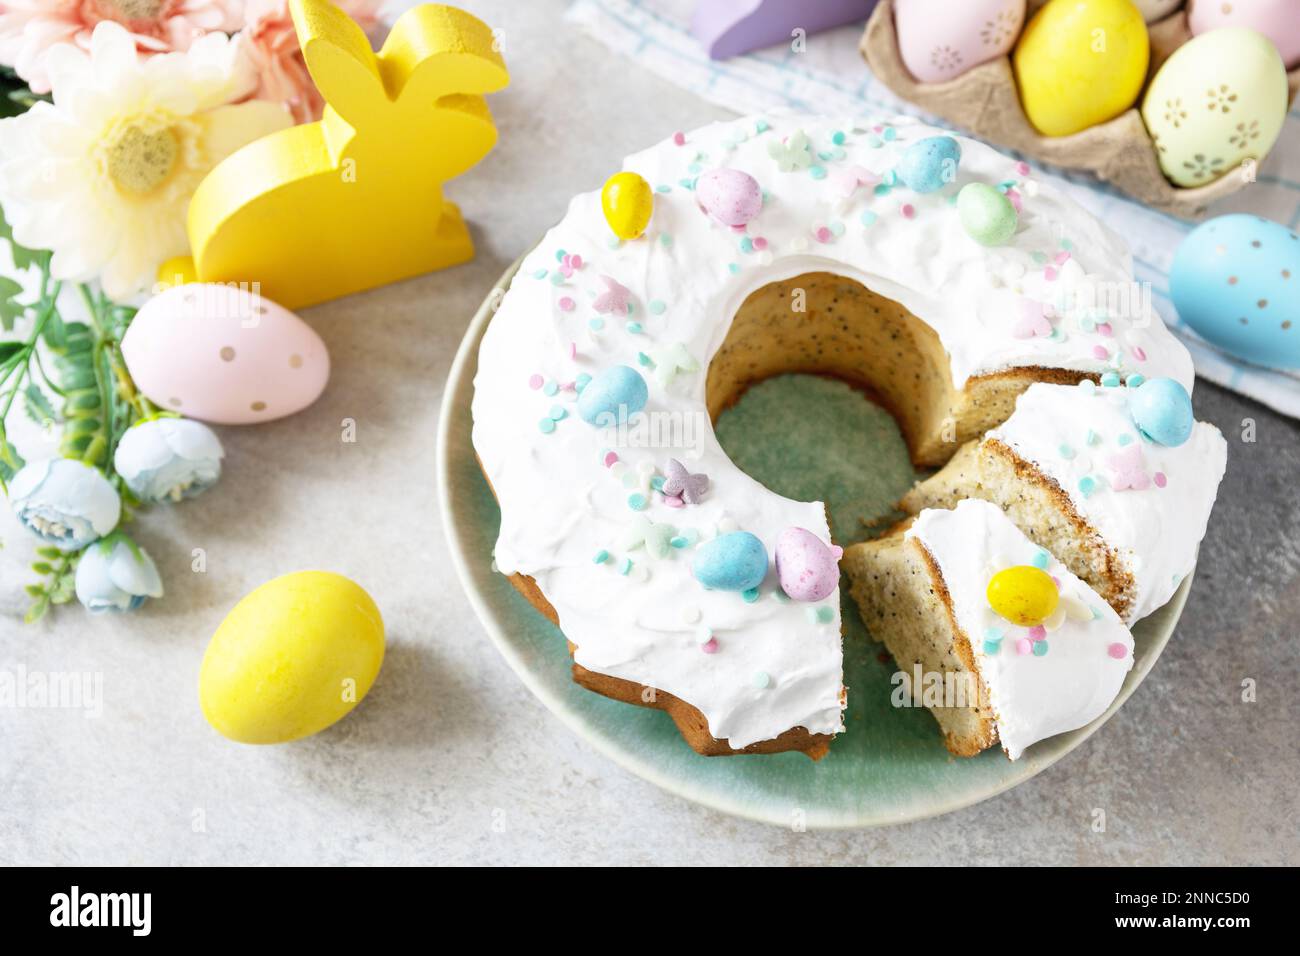 Joyeuses Pâques, délicieux dessert. Gâteau de pâques glacé au citron décoré de confiseries et de mini-bonbons aux œufs de chocolat sur fond de pierre grise. Banque D'Images